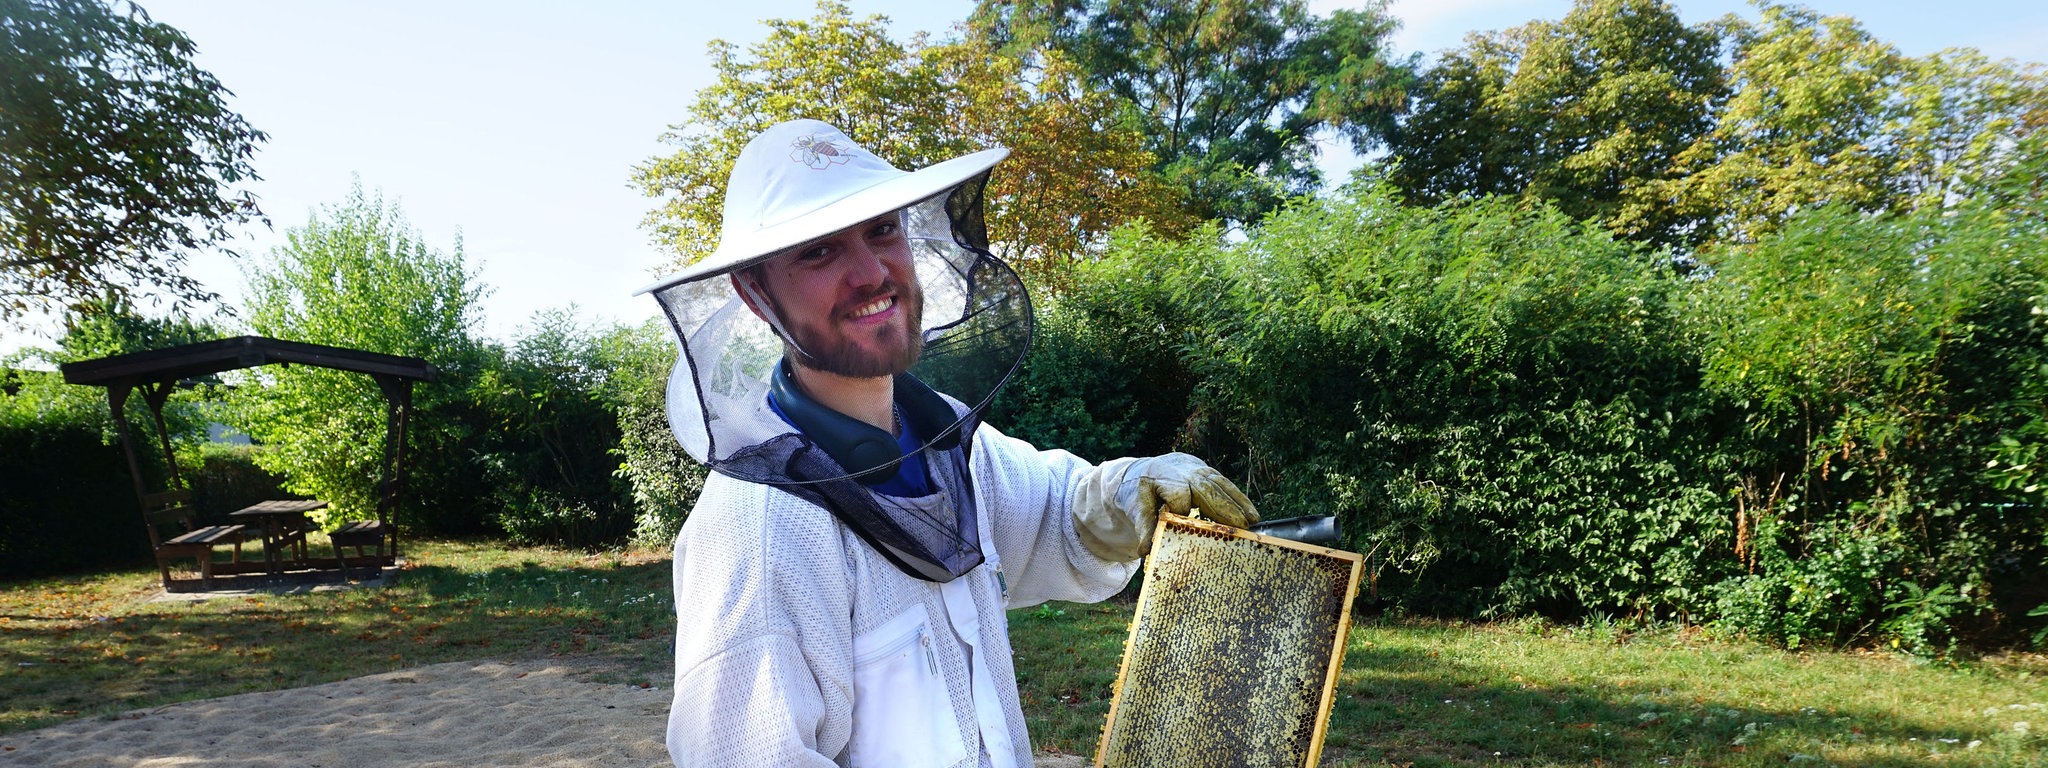 Hobbyimker allein können Bienensterben nicht aufhalten